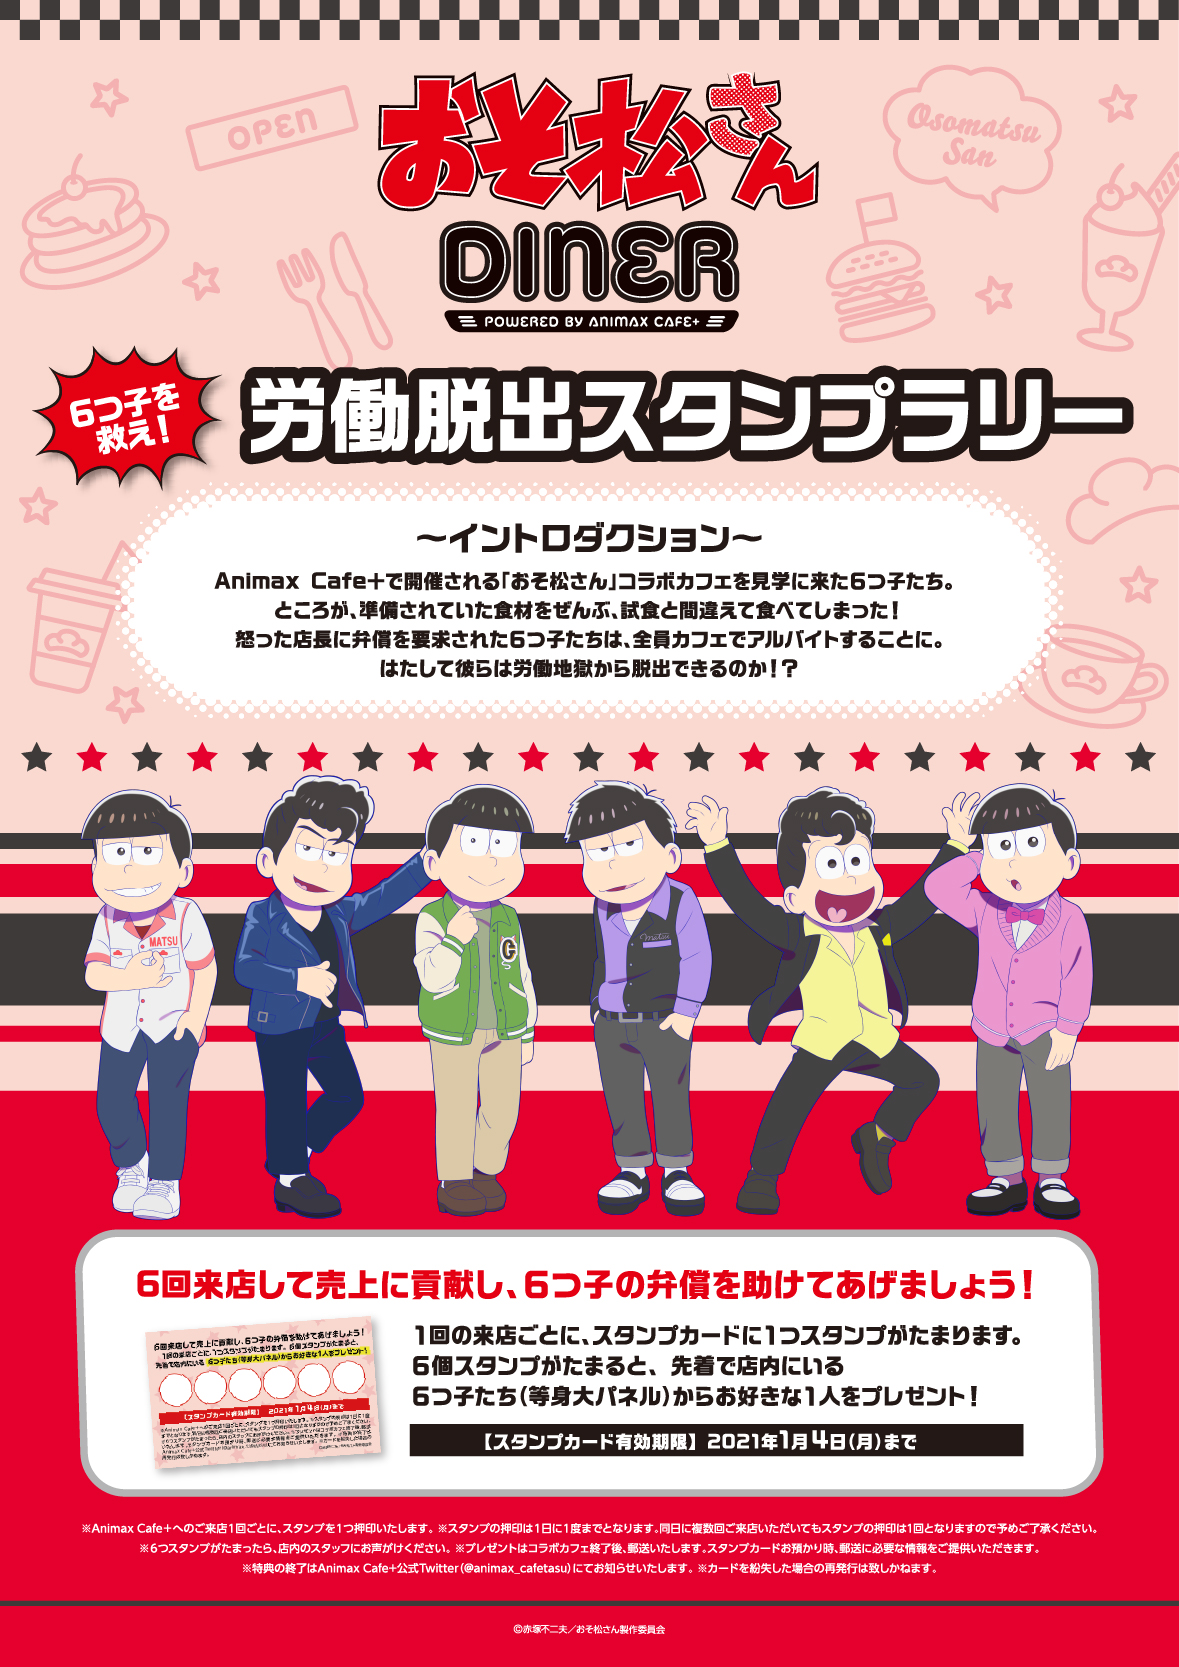 「おそ松さん」×「Animax Cafe+」コラボカフェ「おそ松さんDINER」労働脱出スタンプラリー